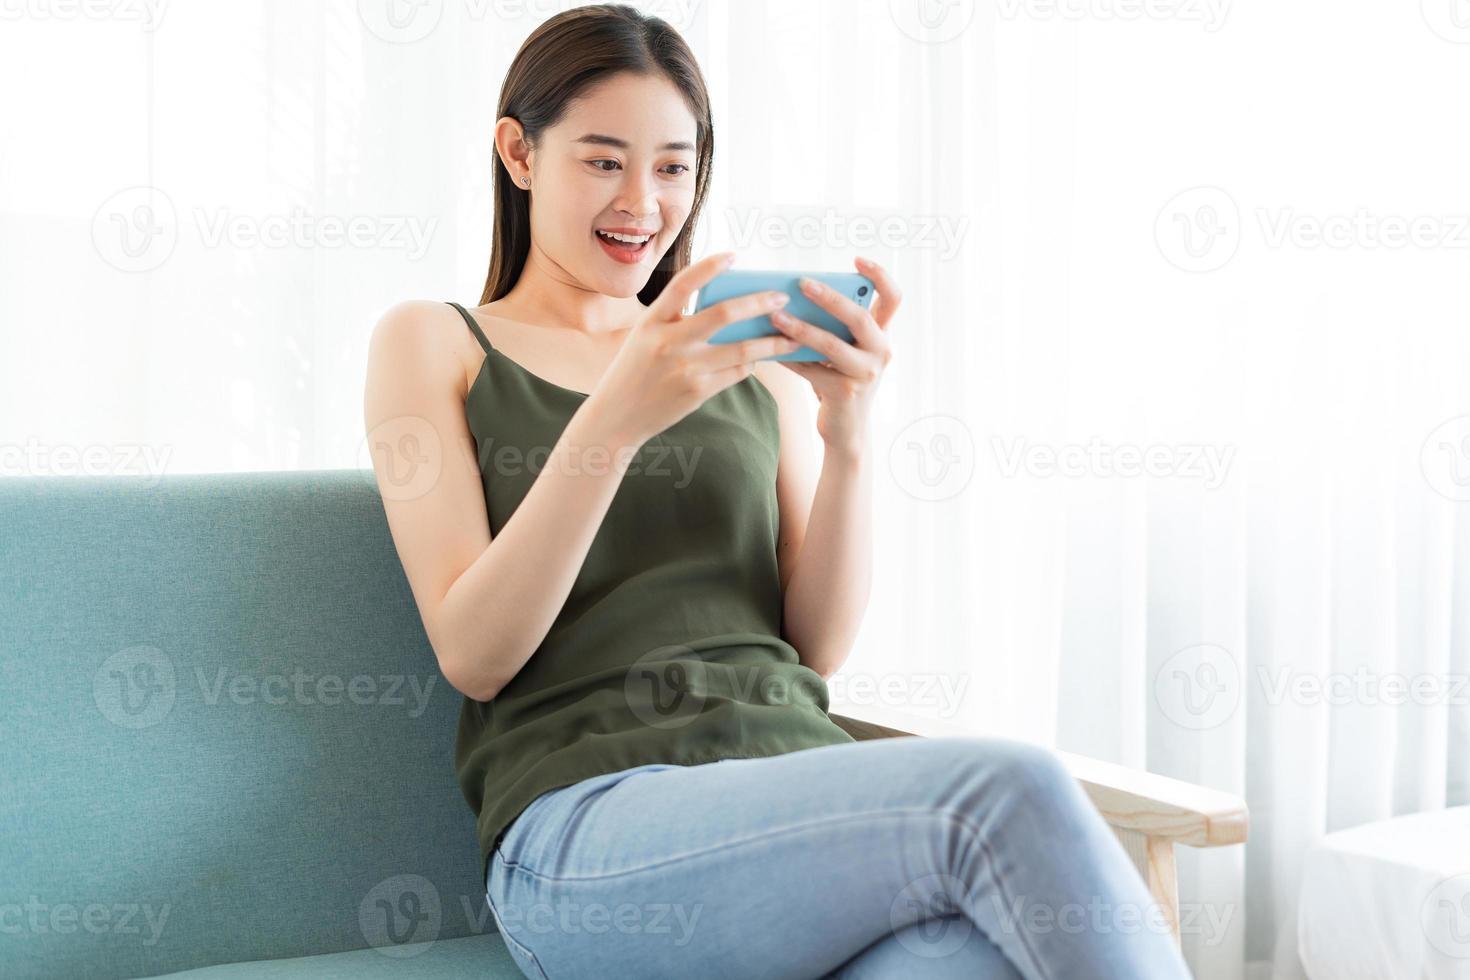 jonge aziatische vrouw die een spel speelt op de telefoon foto